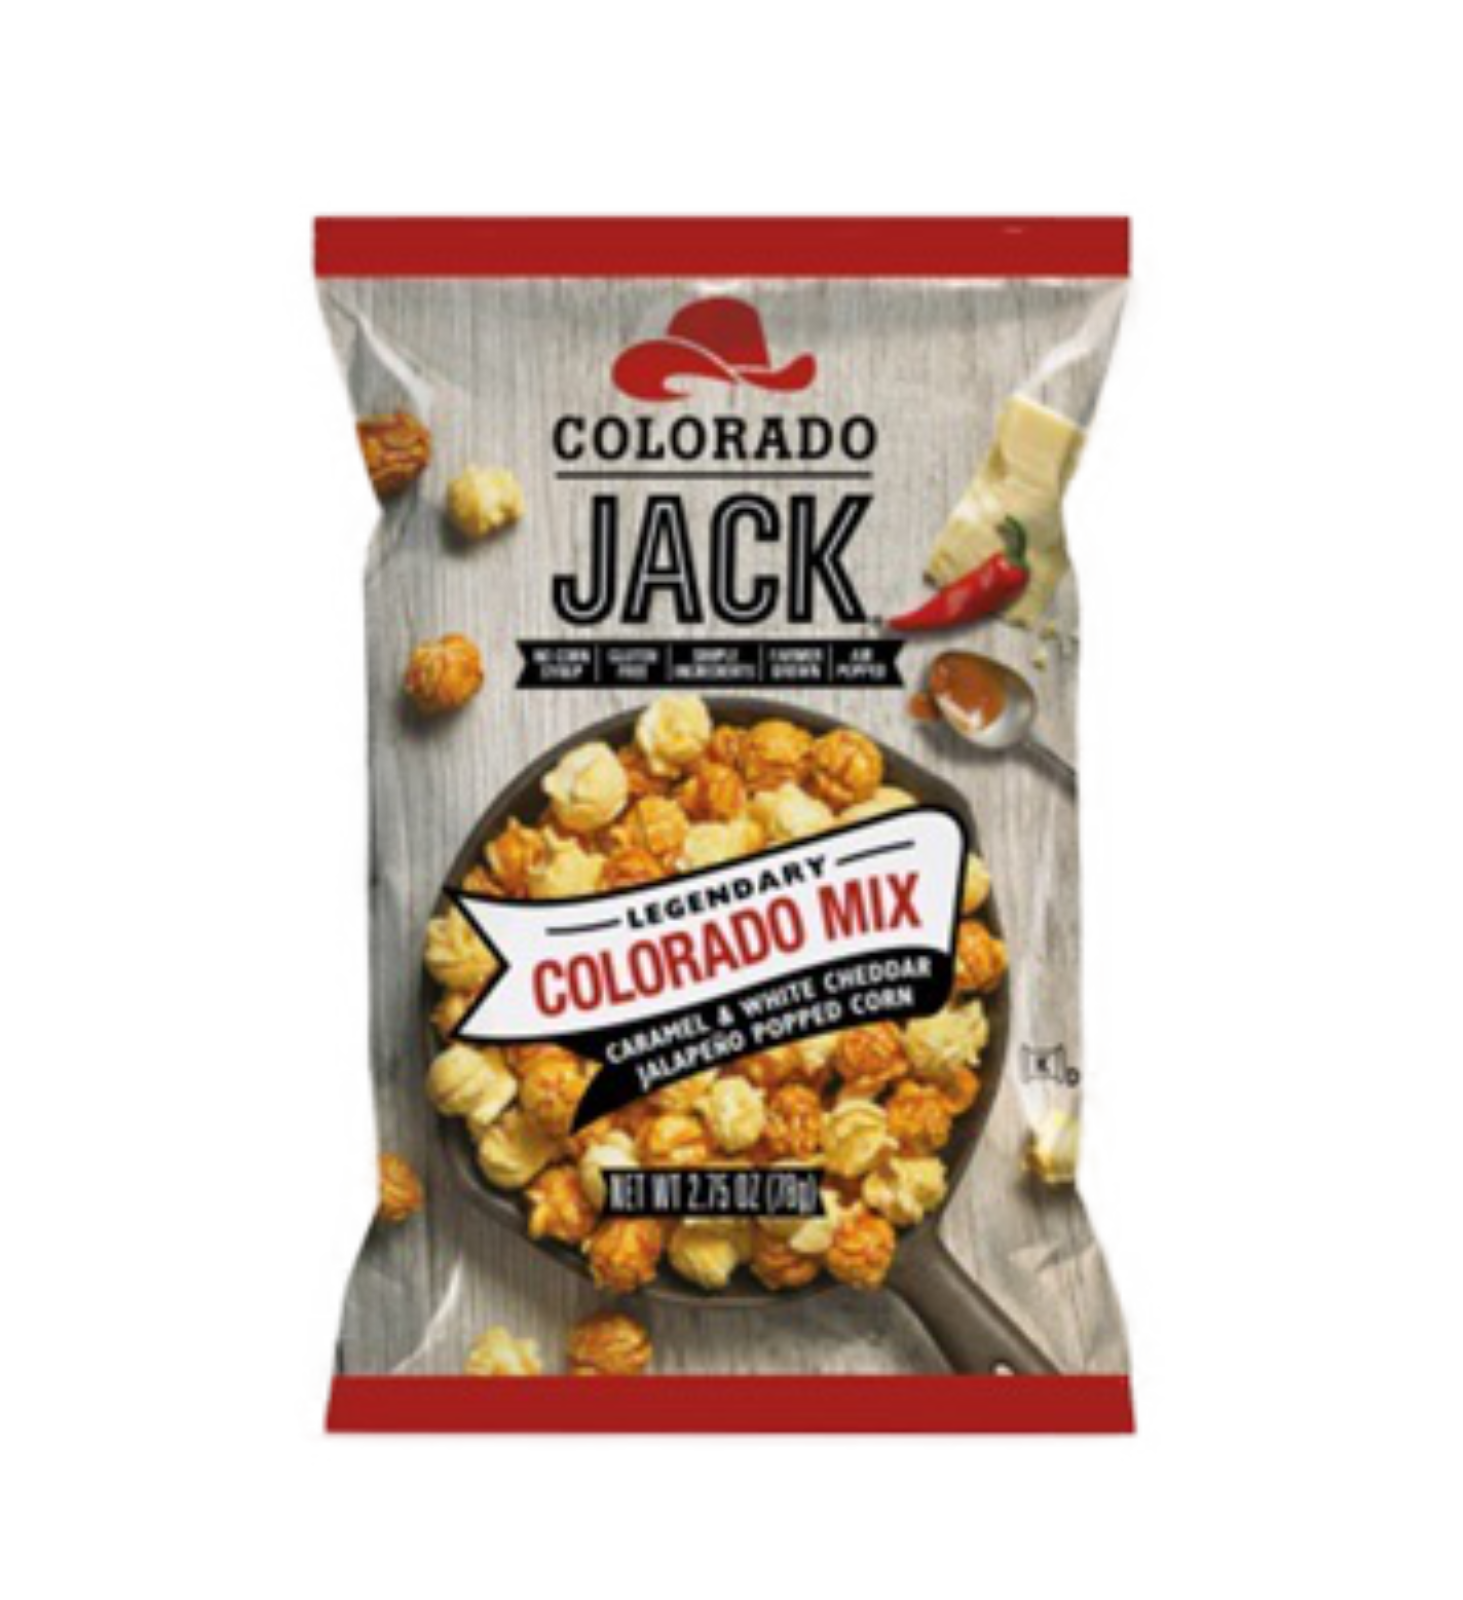 Colorado Jack Colorado Mix USA Popcorn 2.75oz - 6 Count